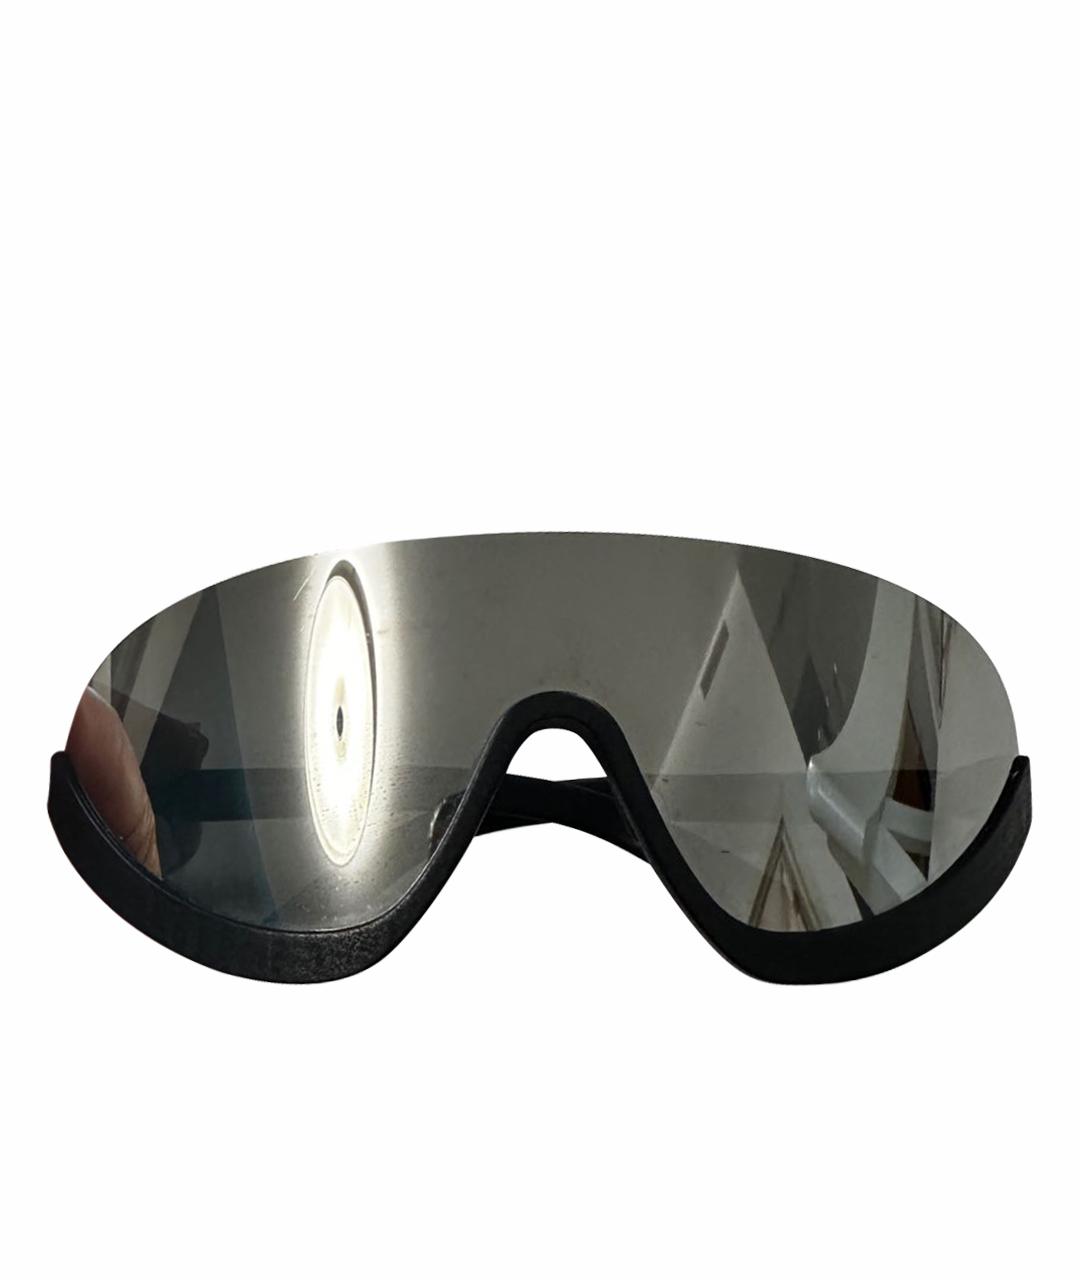 MYKITA Черные металлические солнцезащитные очки, фото 1